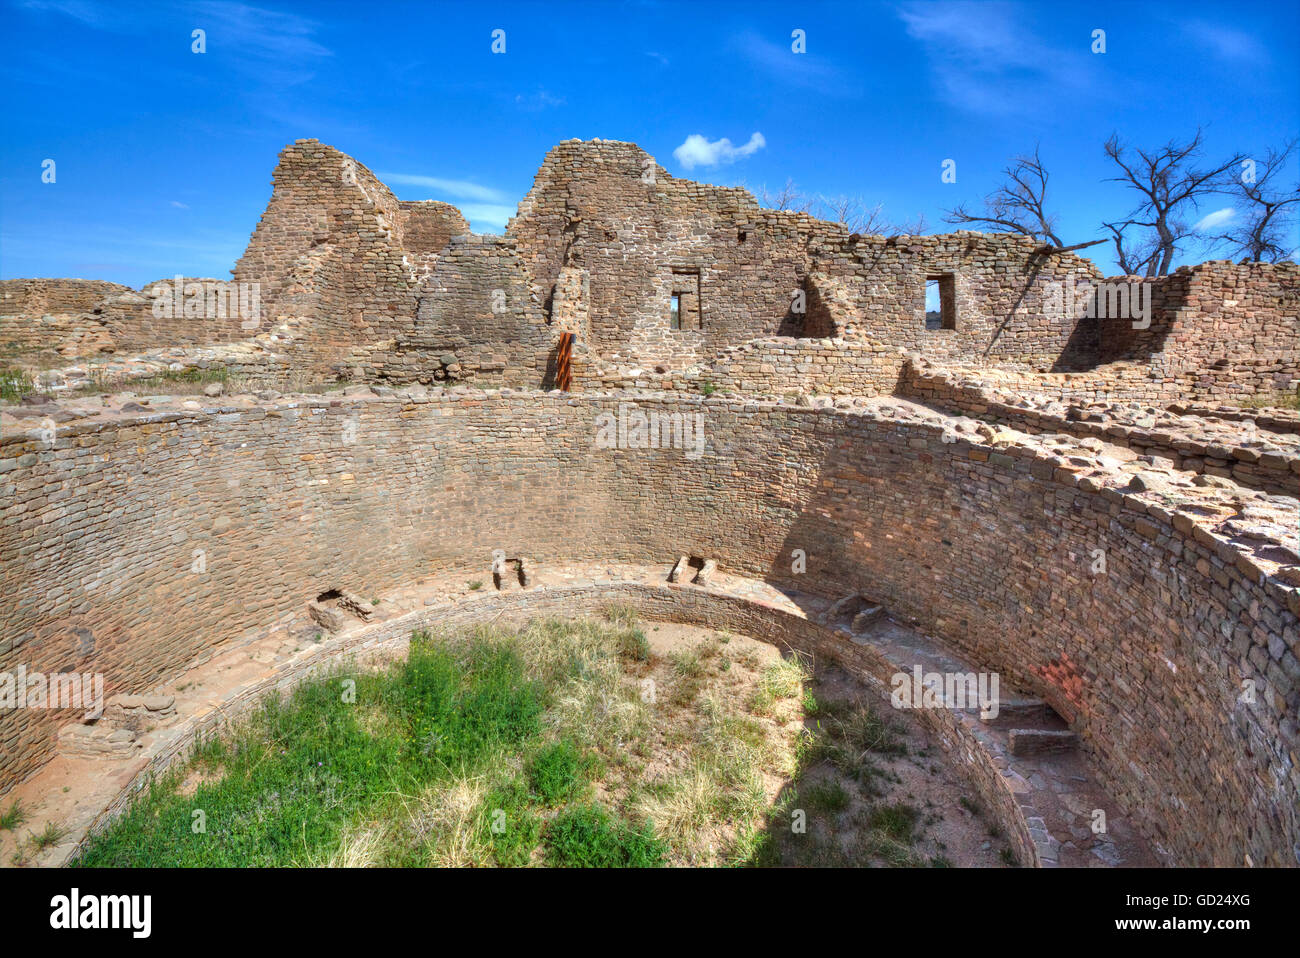 Aprire Kiva in Occidente rovine, Aztec Ruins National Monument, risalenti al periodo tra il 850 D.C. e 1100 DC, UNESCO, Nuovo Messico, STATI UNITI D'AMERICA Foto Stock